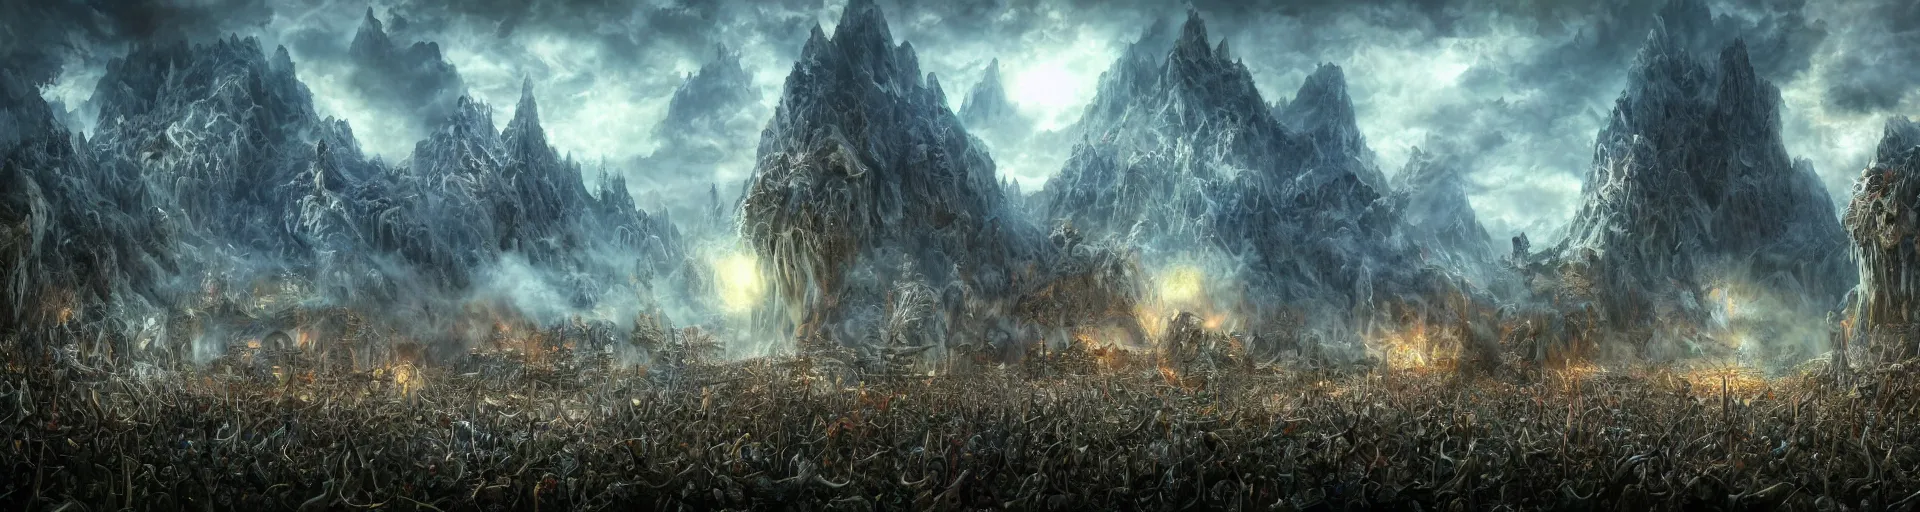 Prompt: Epica putting on a concert in a fantasy landscape, highly detailed, digital art, trending on artstation